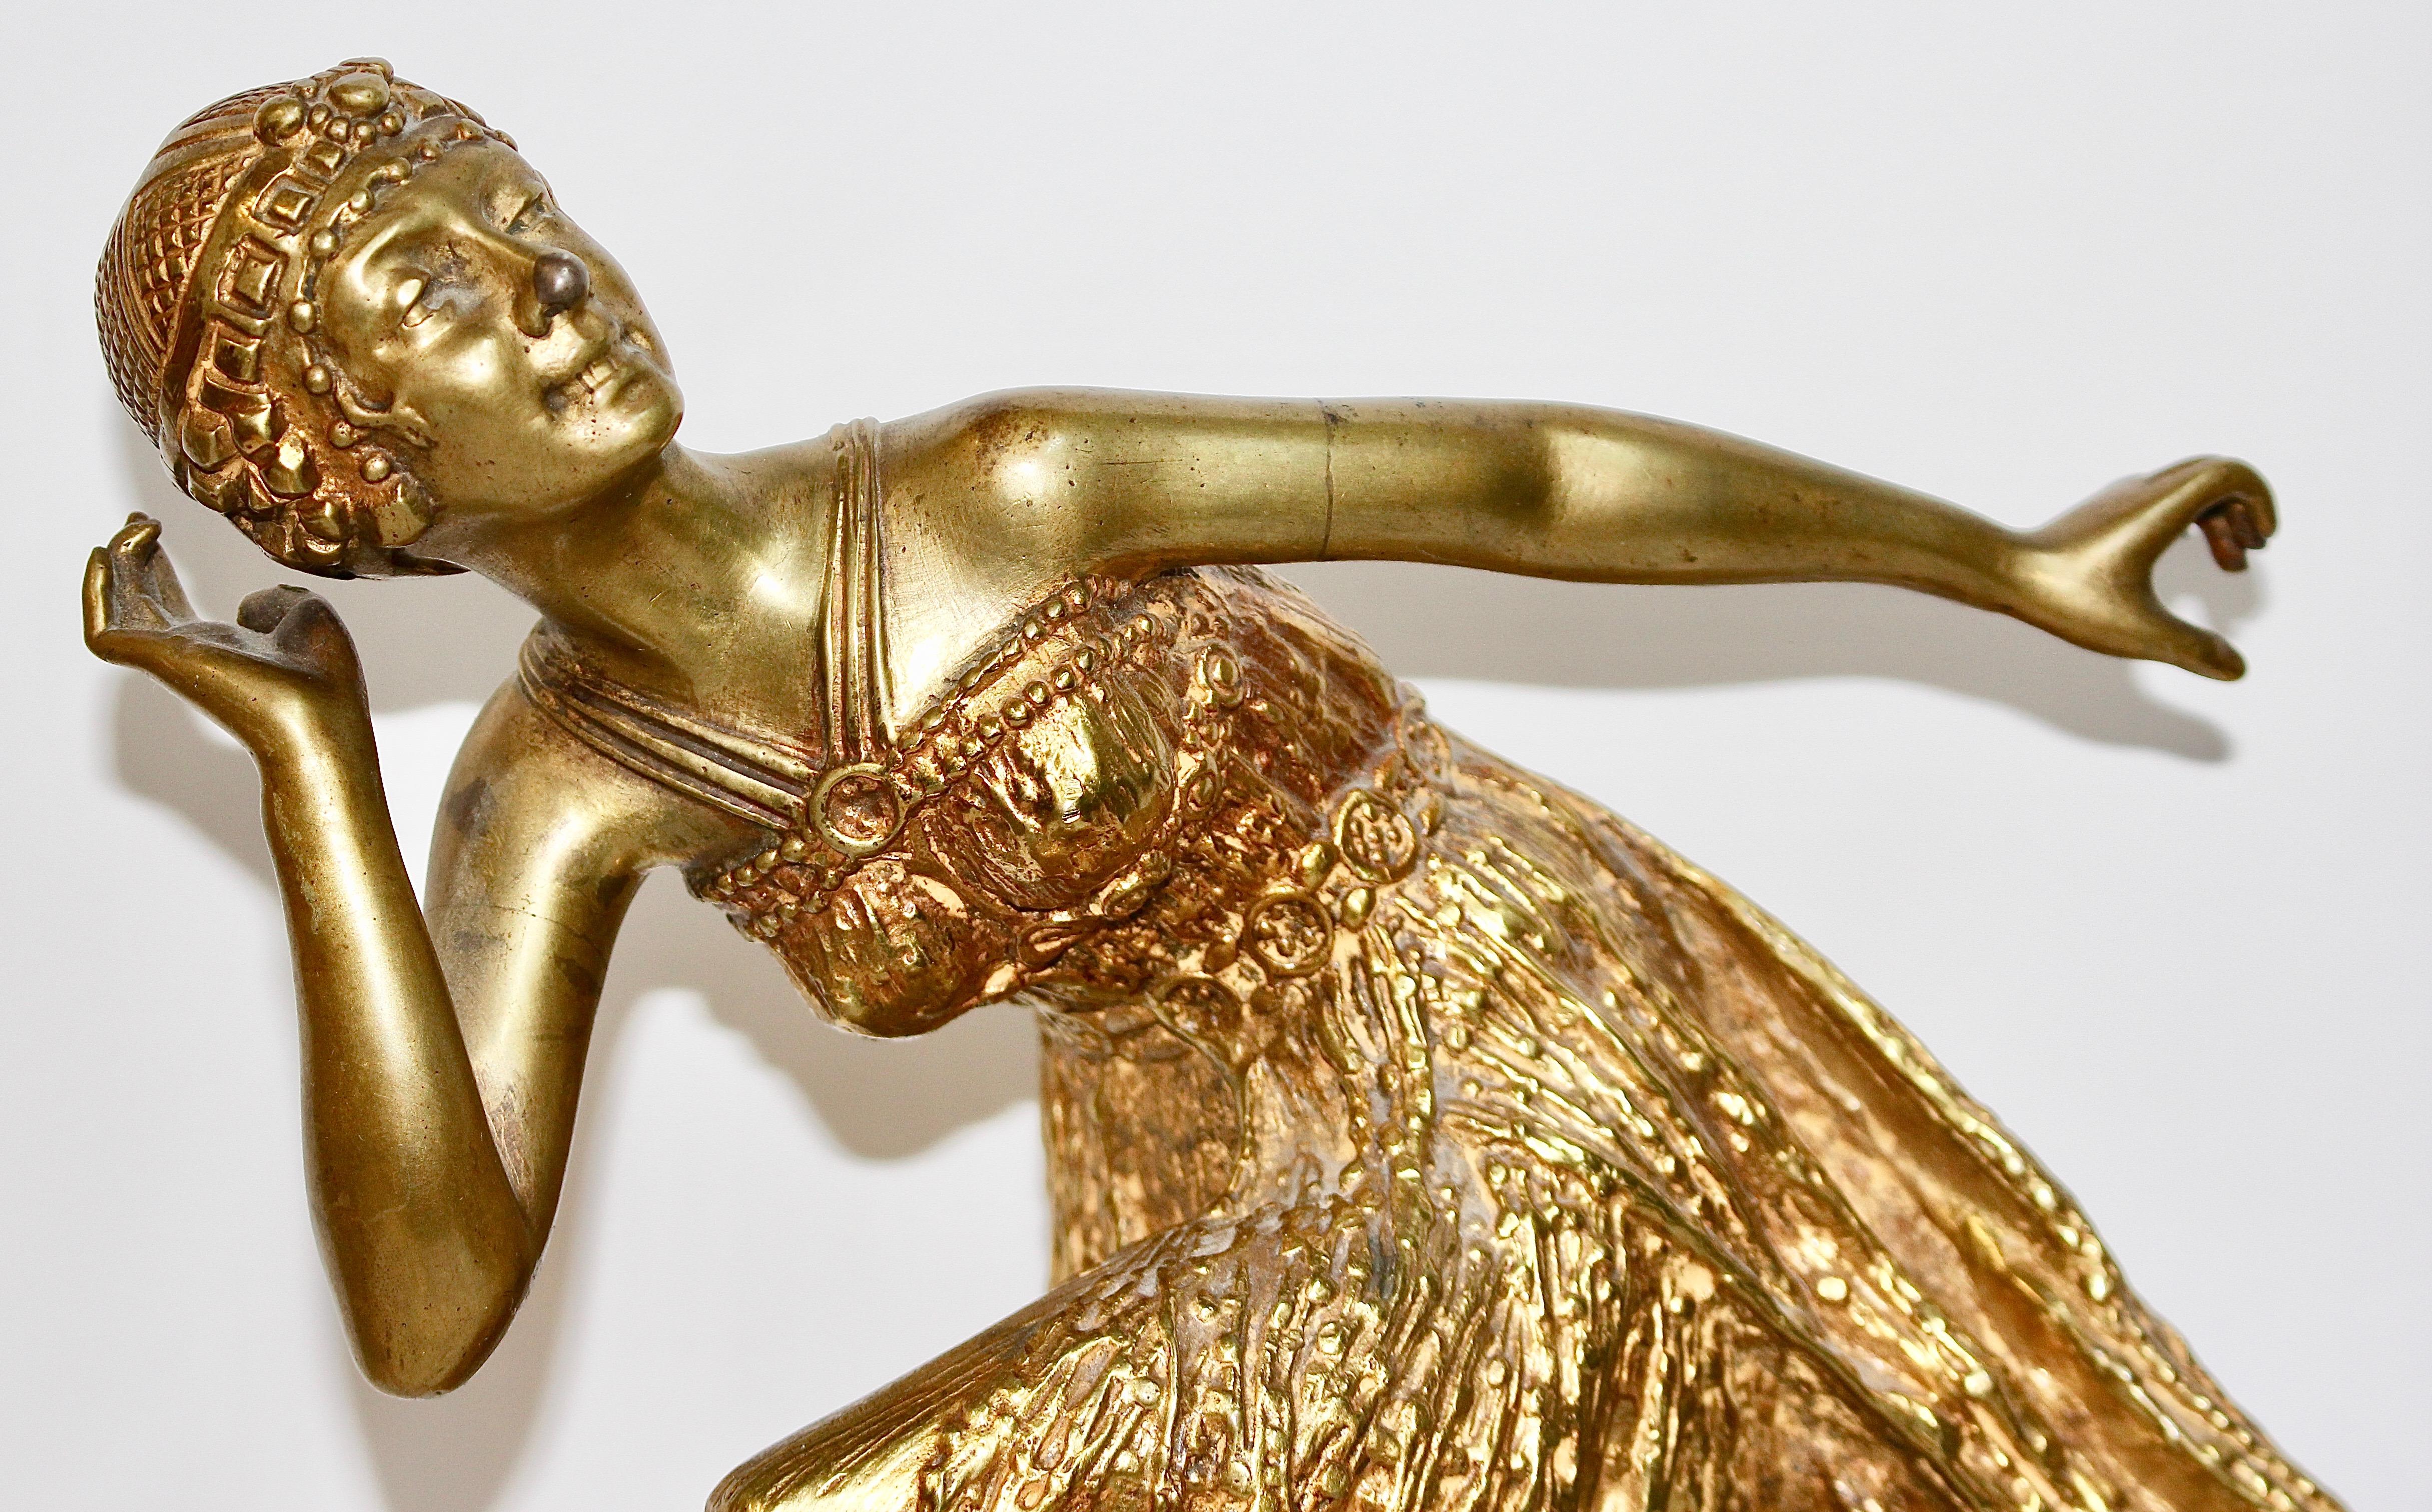 Bezaubernde und dekorative antike Bronzeskulptur.
Antike feuervergoldete Bronzeskulptur. Art Deco, Jugendstil tanzende Dame. 